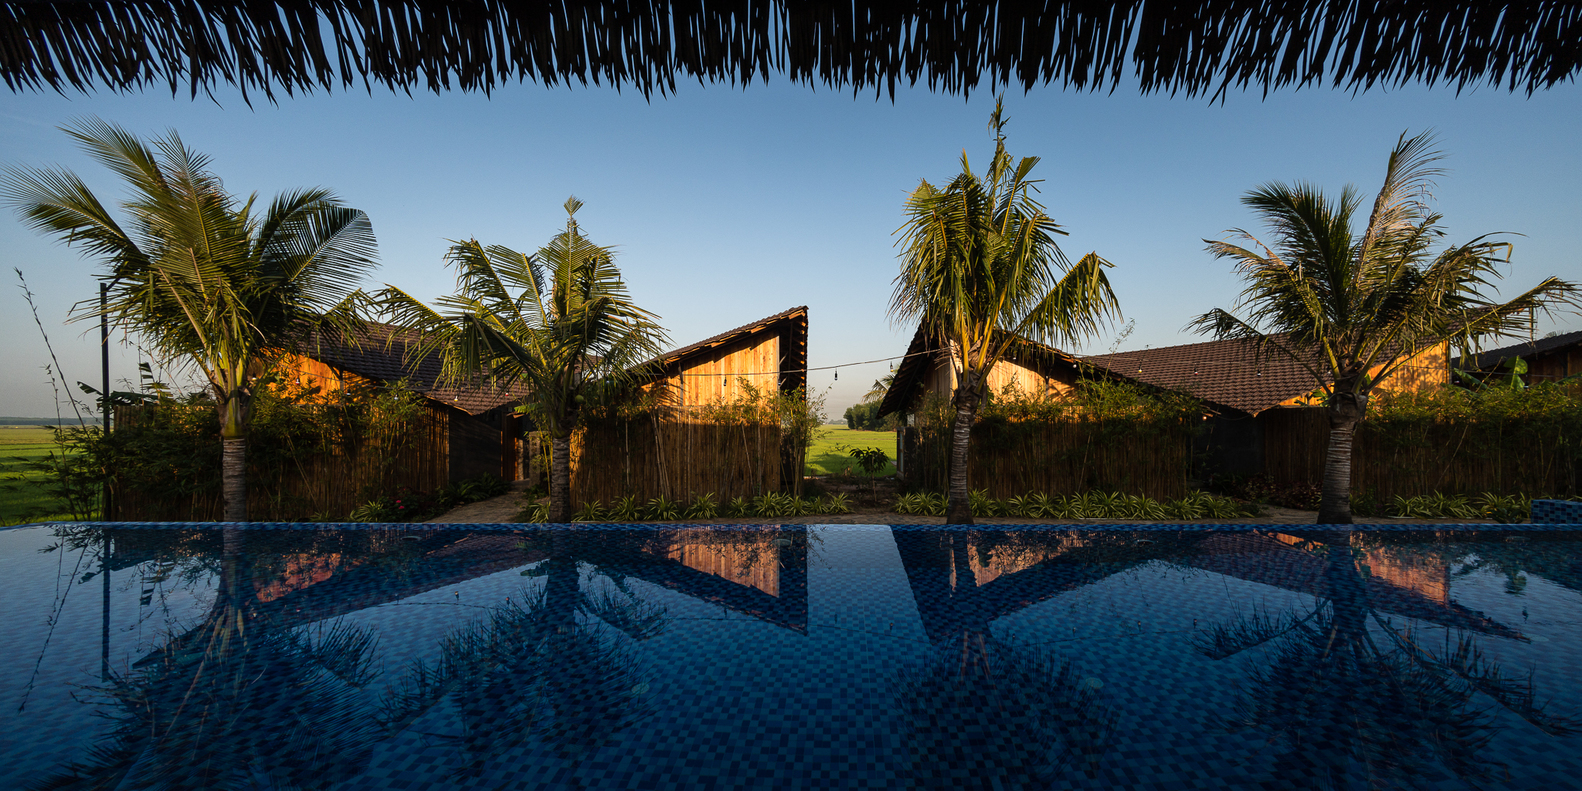 Hình ảnh mặt sau nhà nghỉ dưỡng với bể bơi vô cực, cau, dừa bao quanh